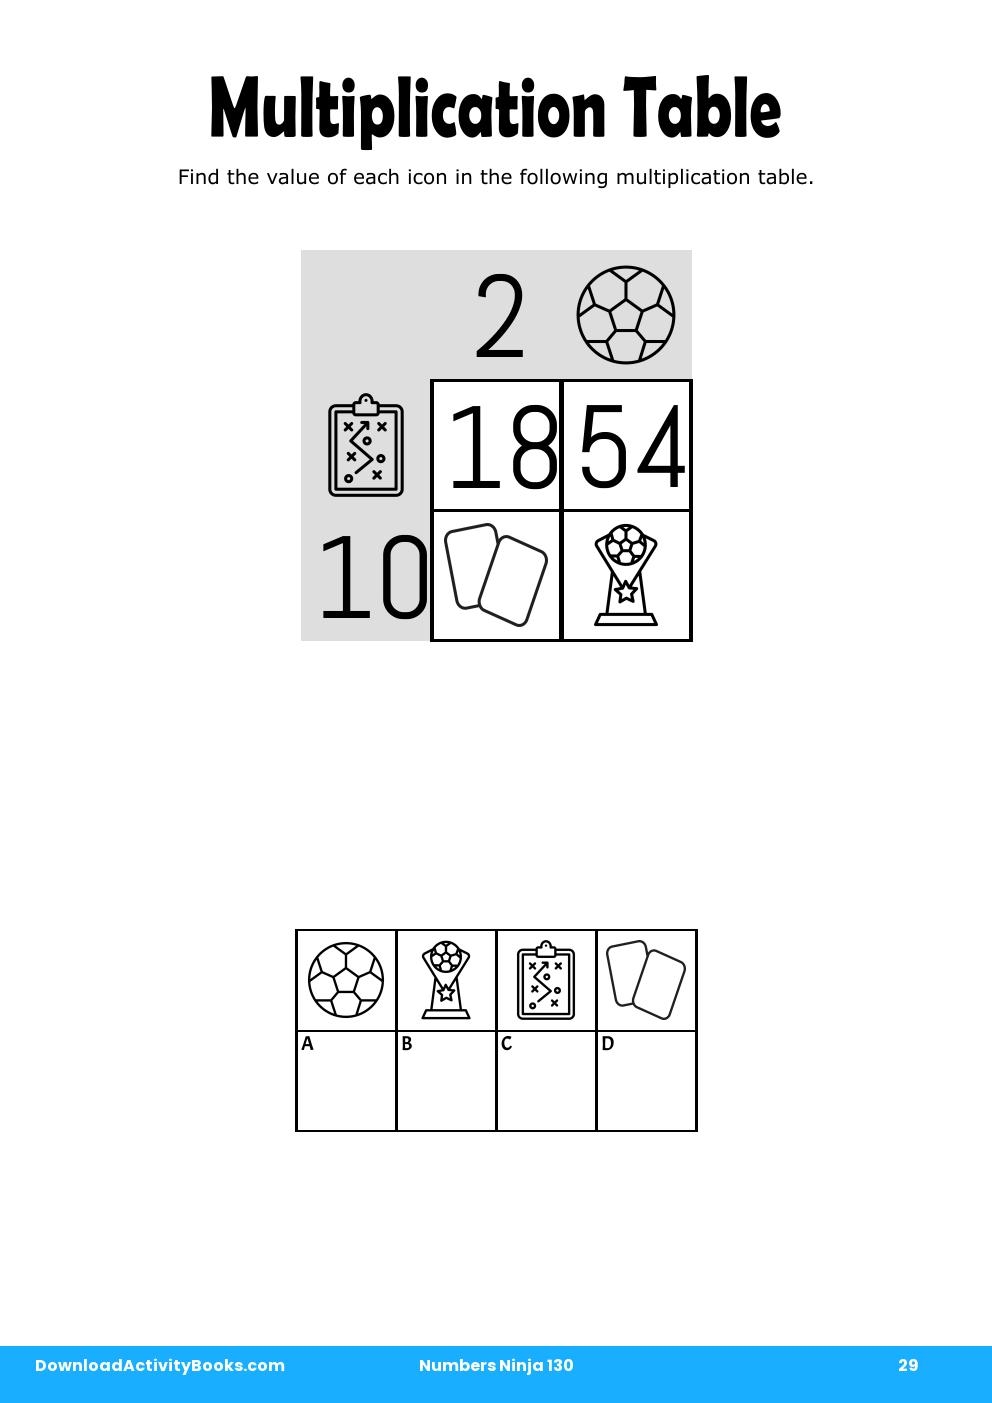 Multiplication Table in Numbers Ninja 130